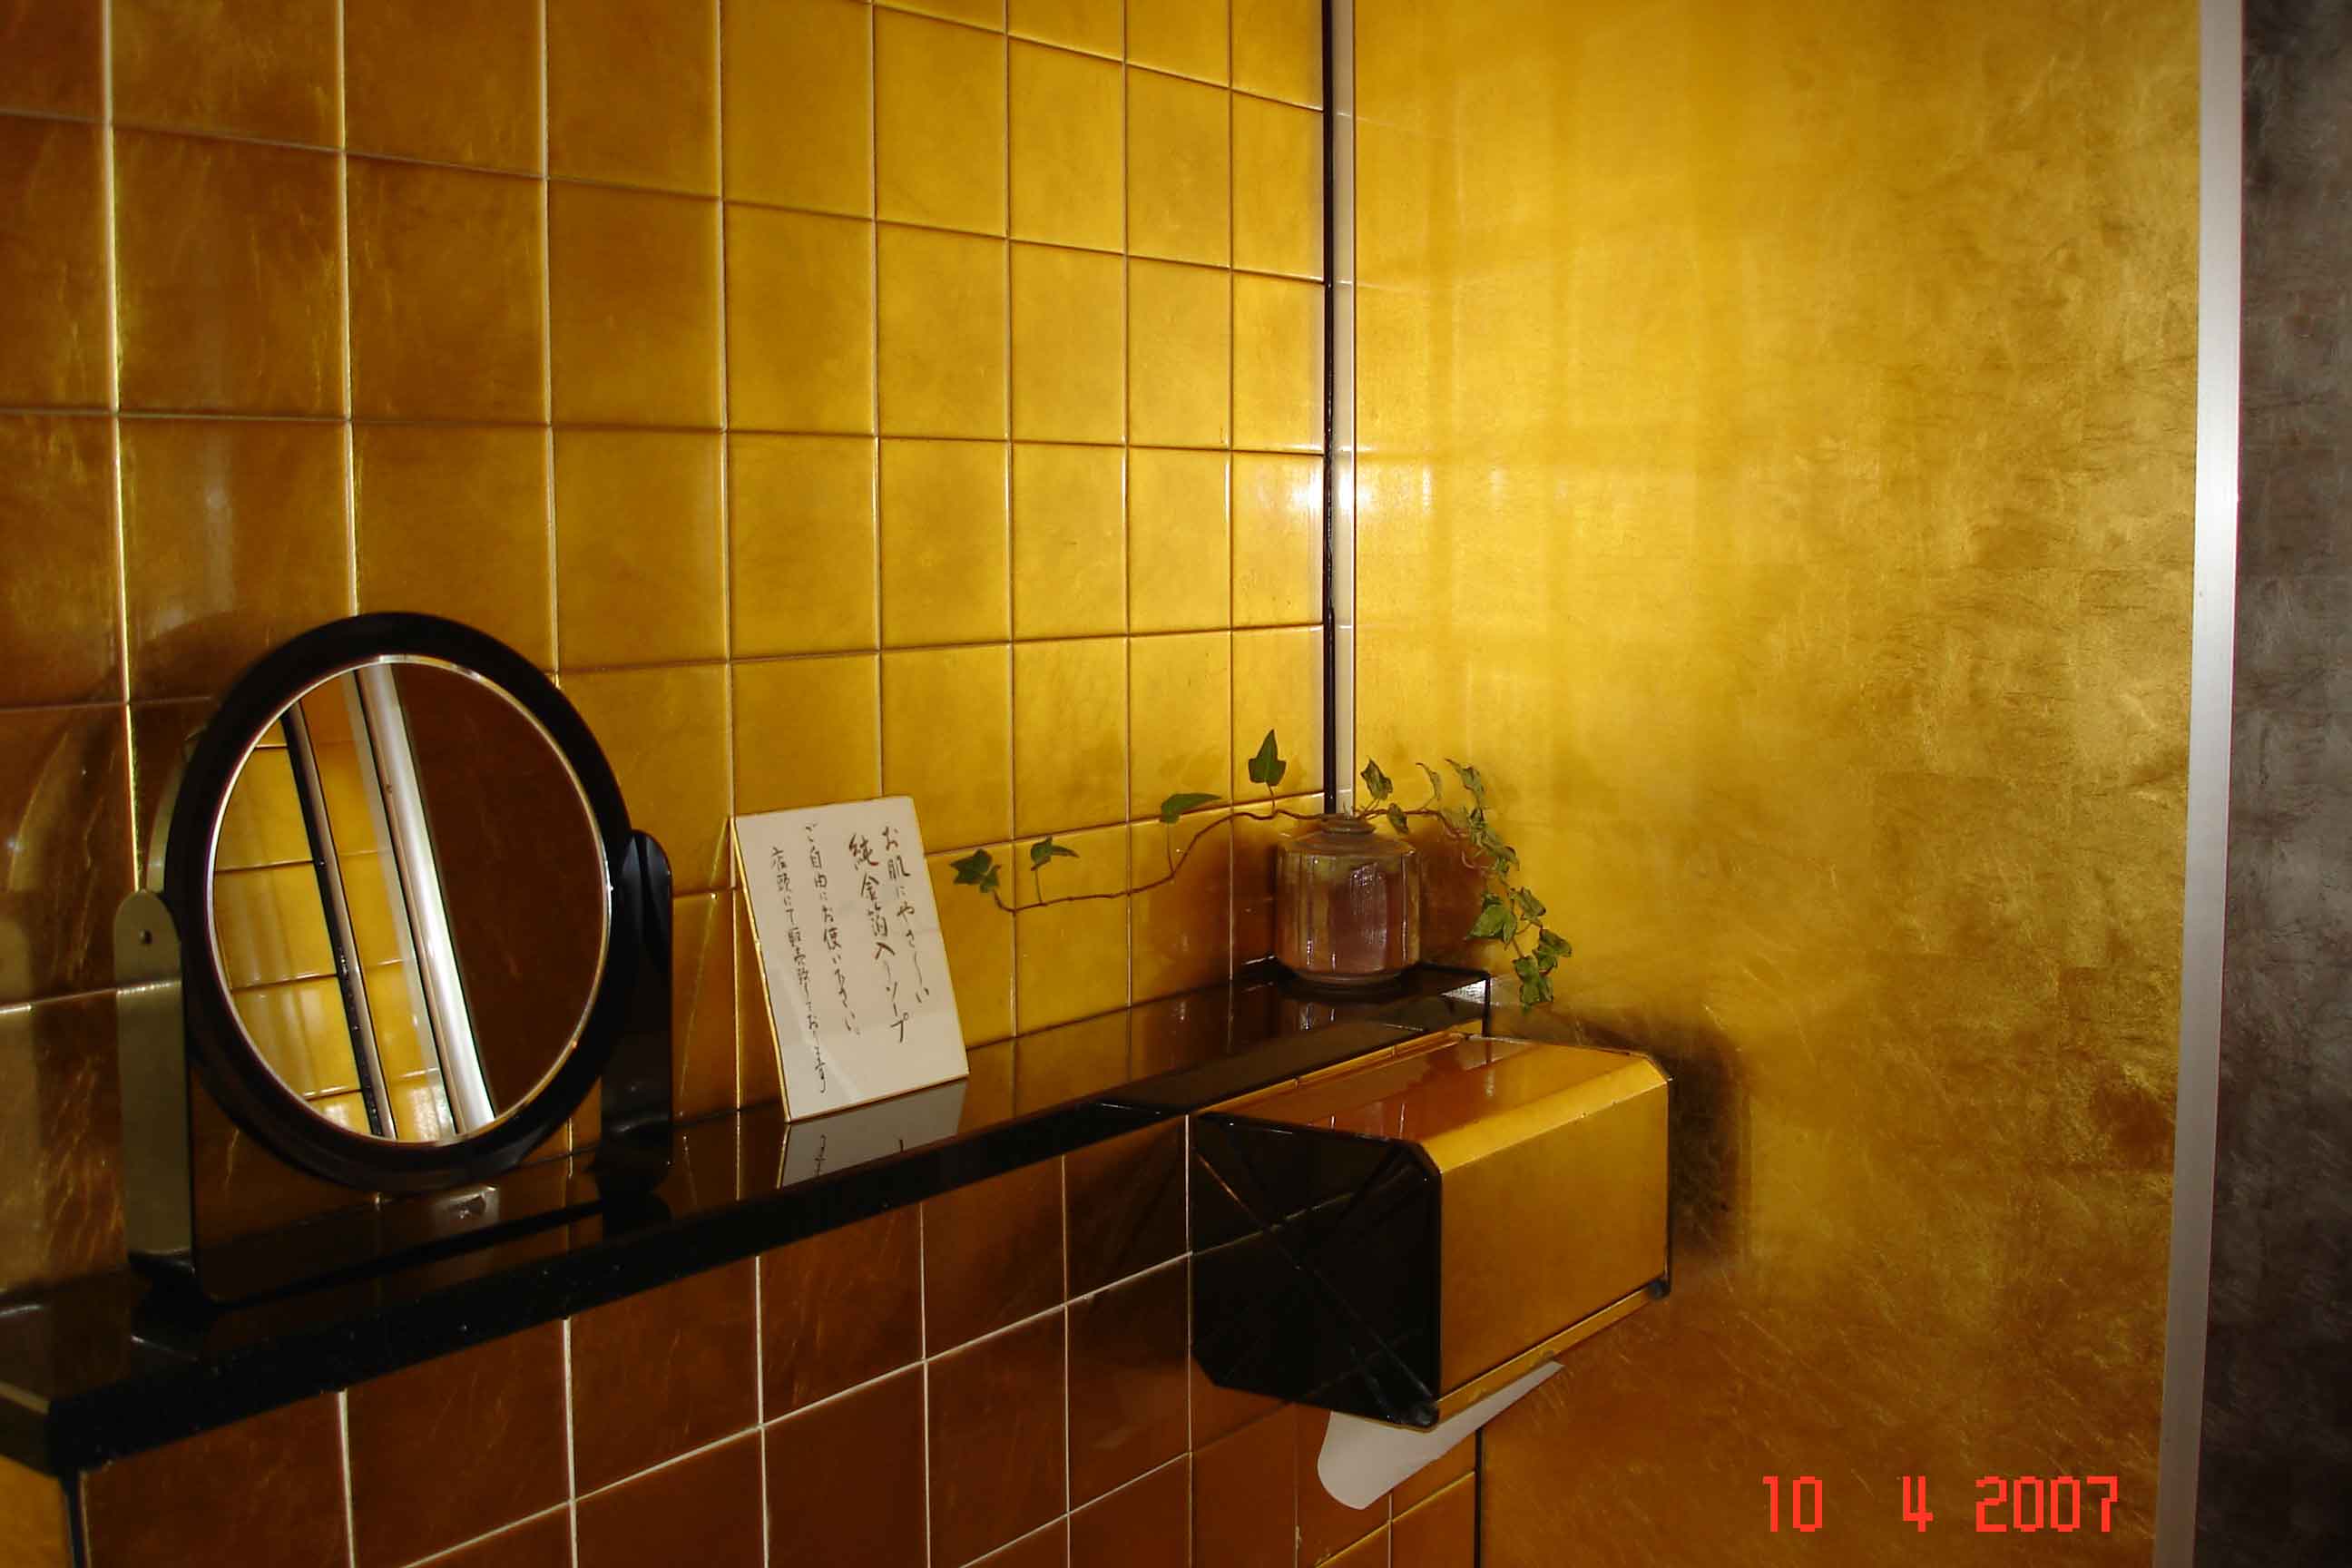 Gold-leaf-ladies-Room-Kanaz